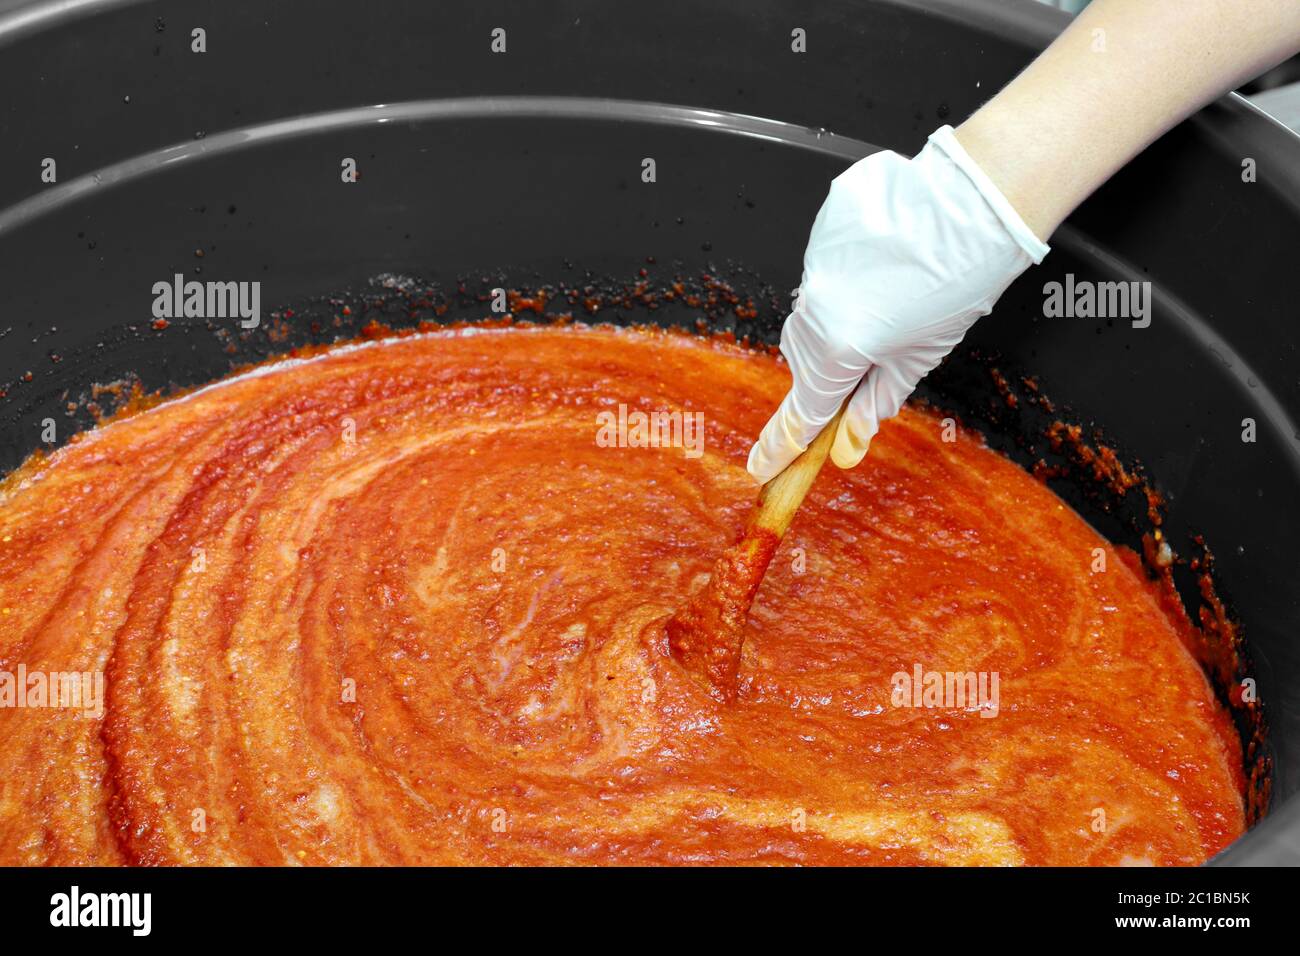 La main droite portait des gants en caoutchouc, remuant dans la sauce à l'orange. Préparez-vous à la cuisine coréenne. Banque D'Images